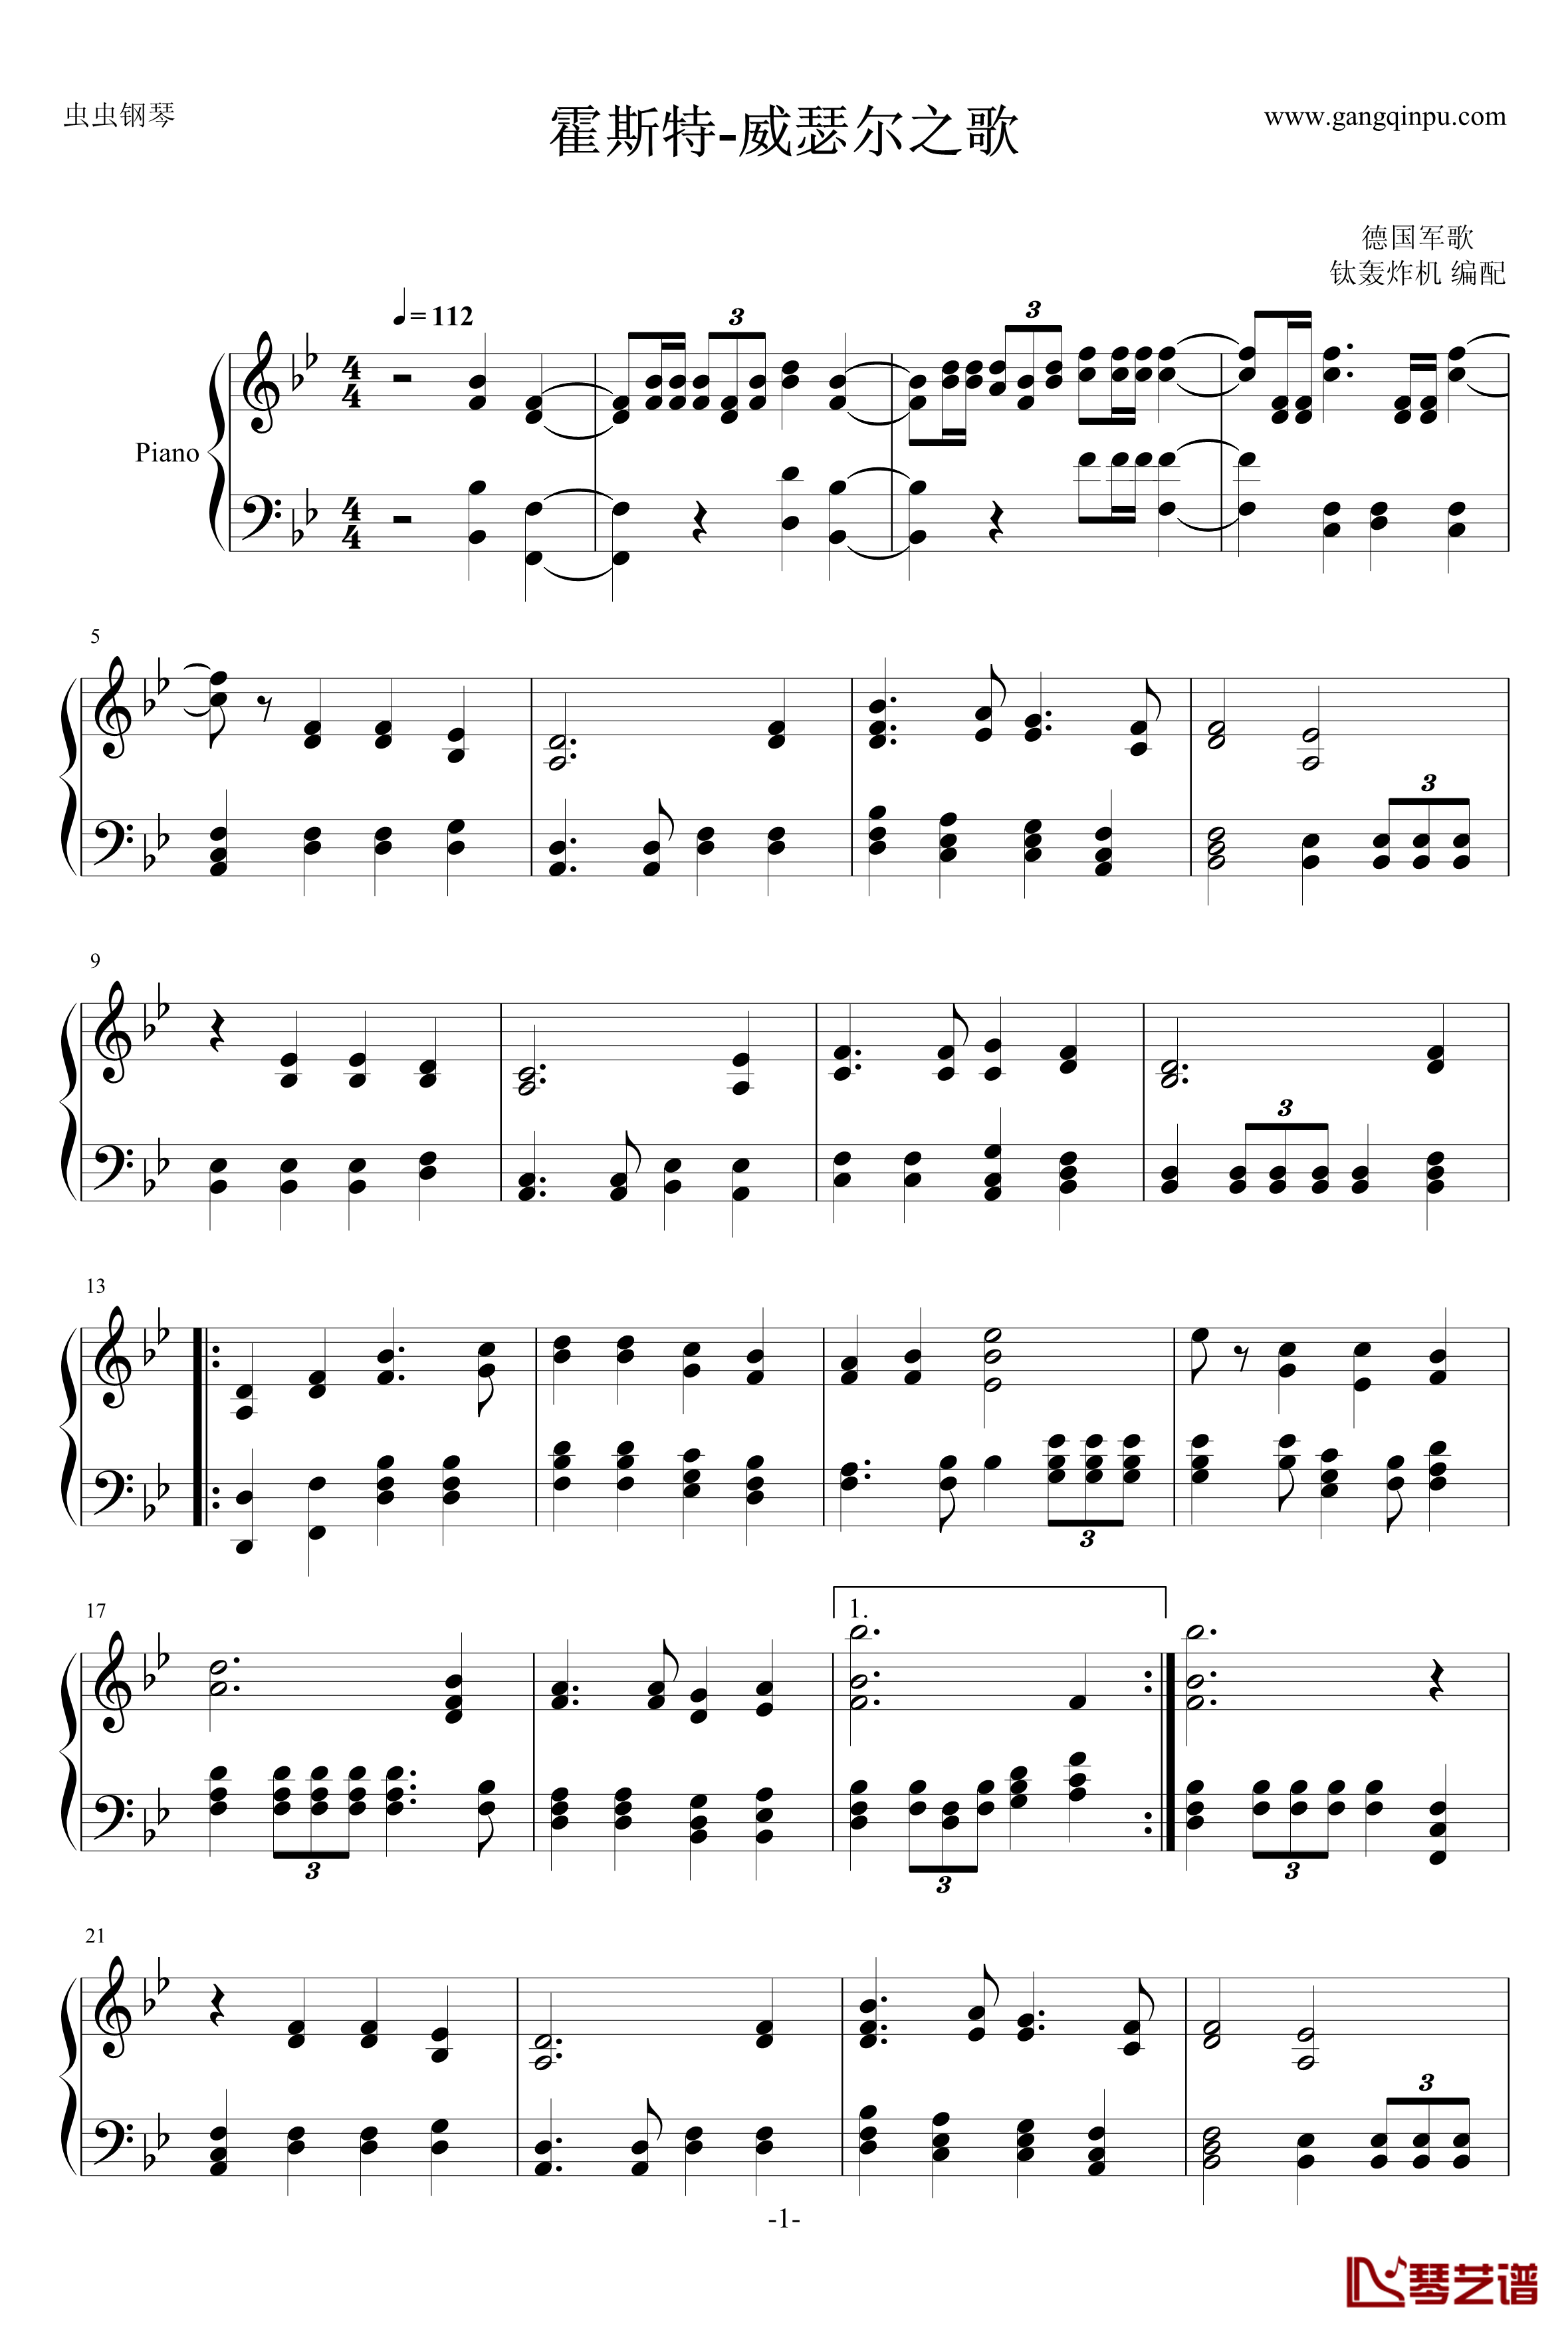 霍斯特钢琴谱-威瑟尔之歌-德国军歌1